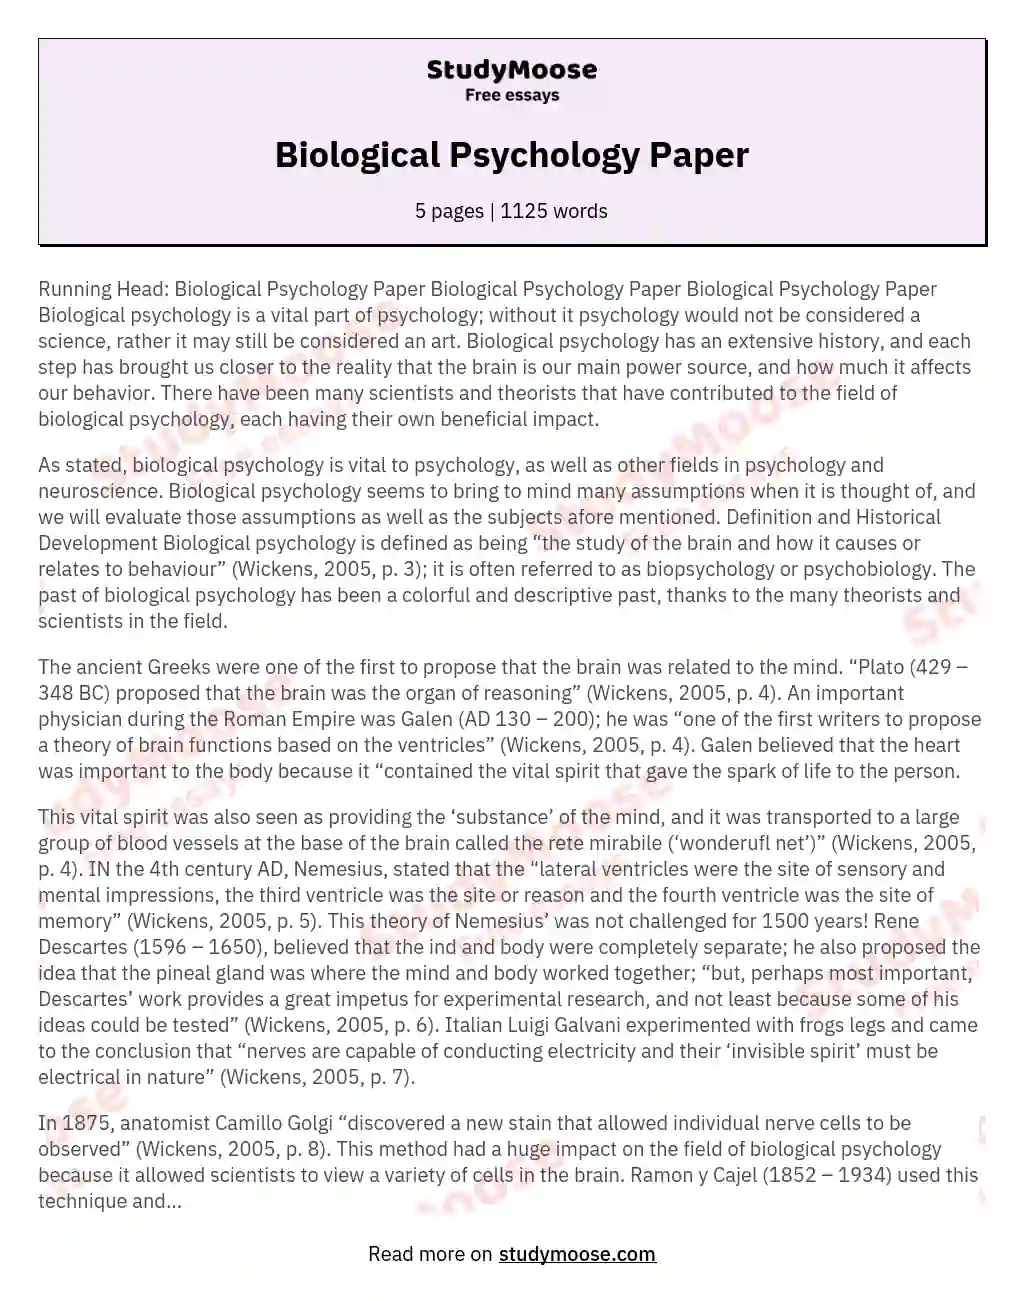 Biological Psychology Paper essay